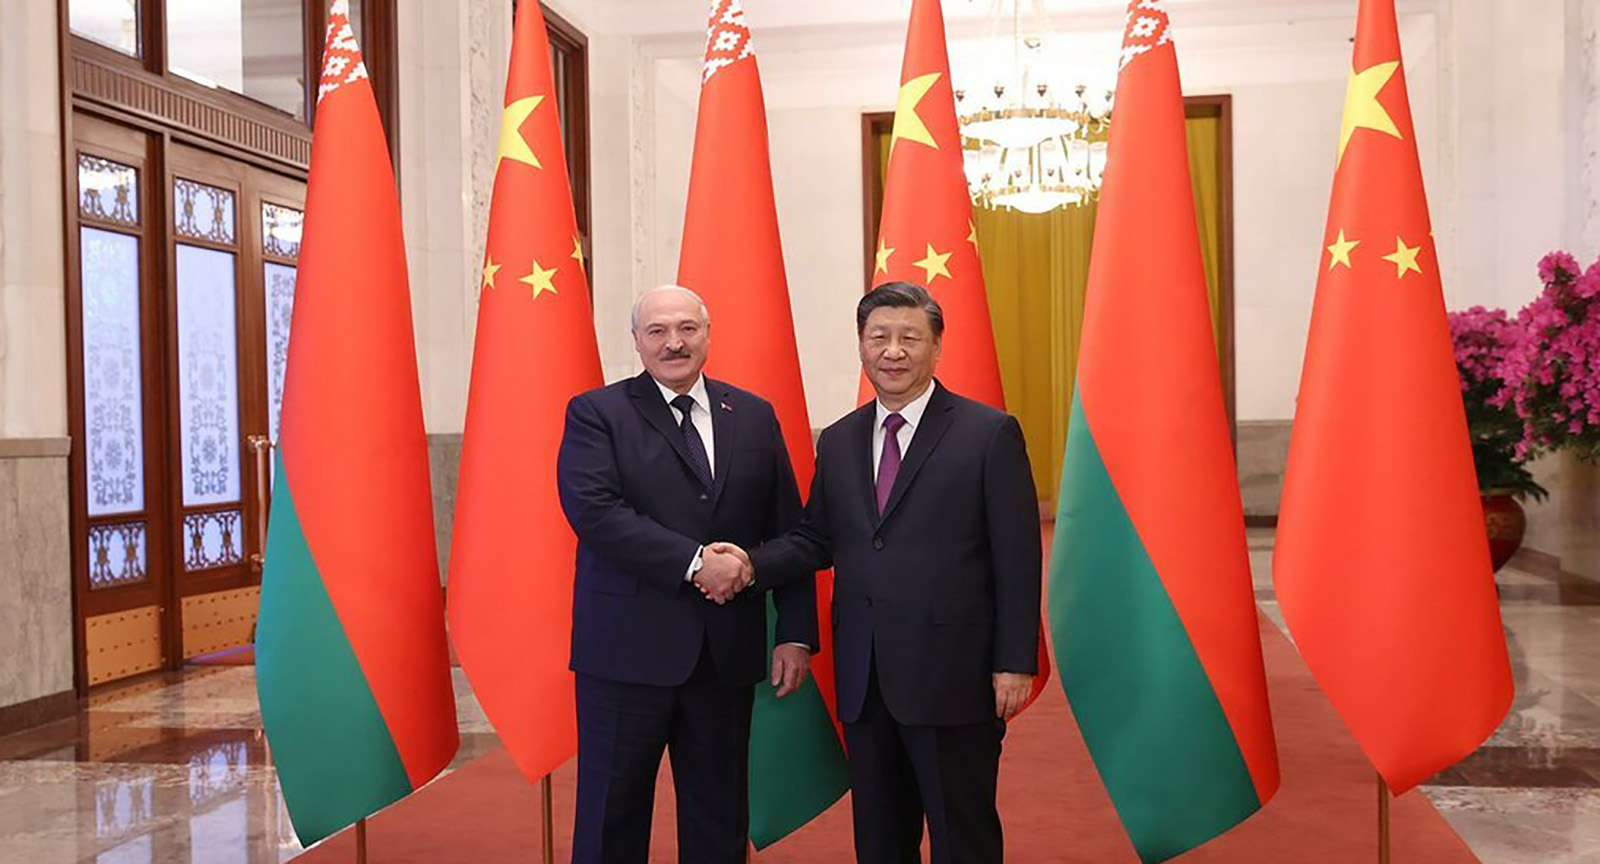 Nihon Keizai: Визит Александра Лукашенко в Китай направлен против Джо Байдена